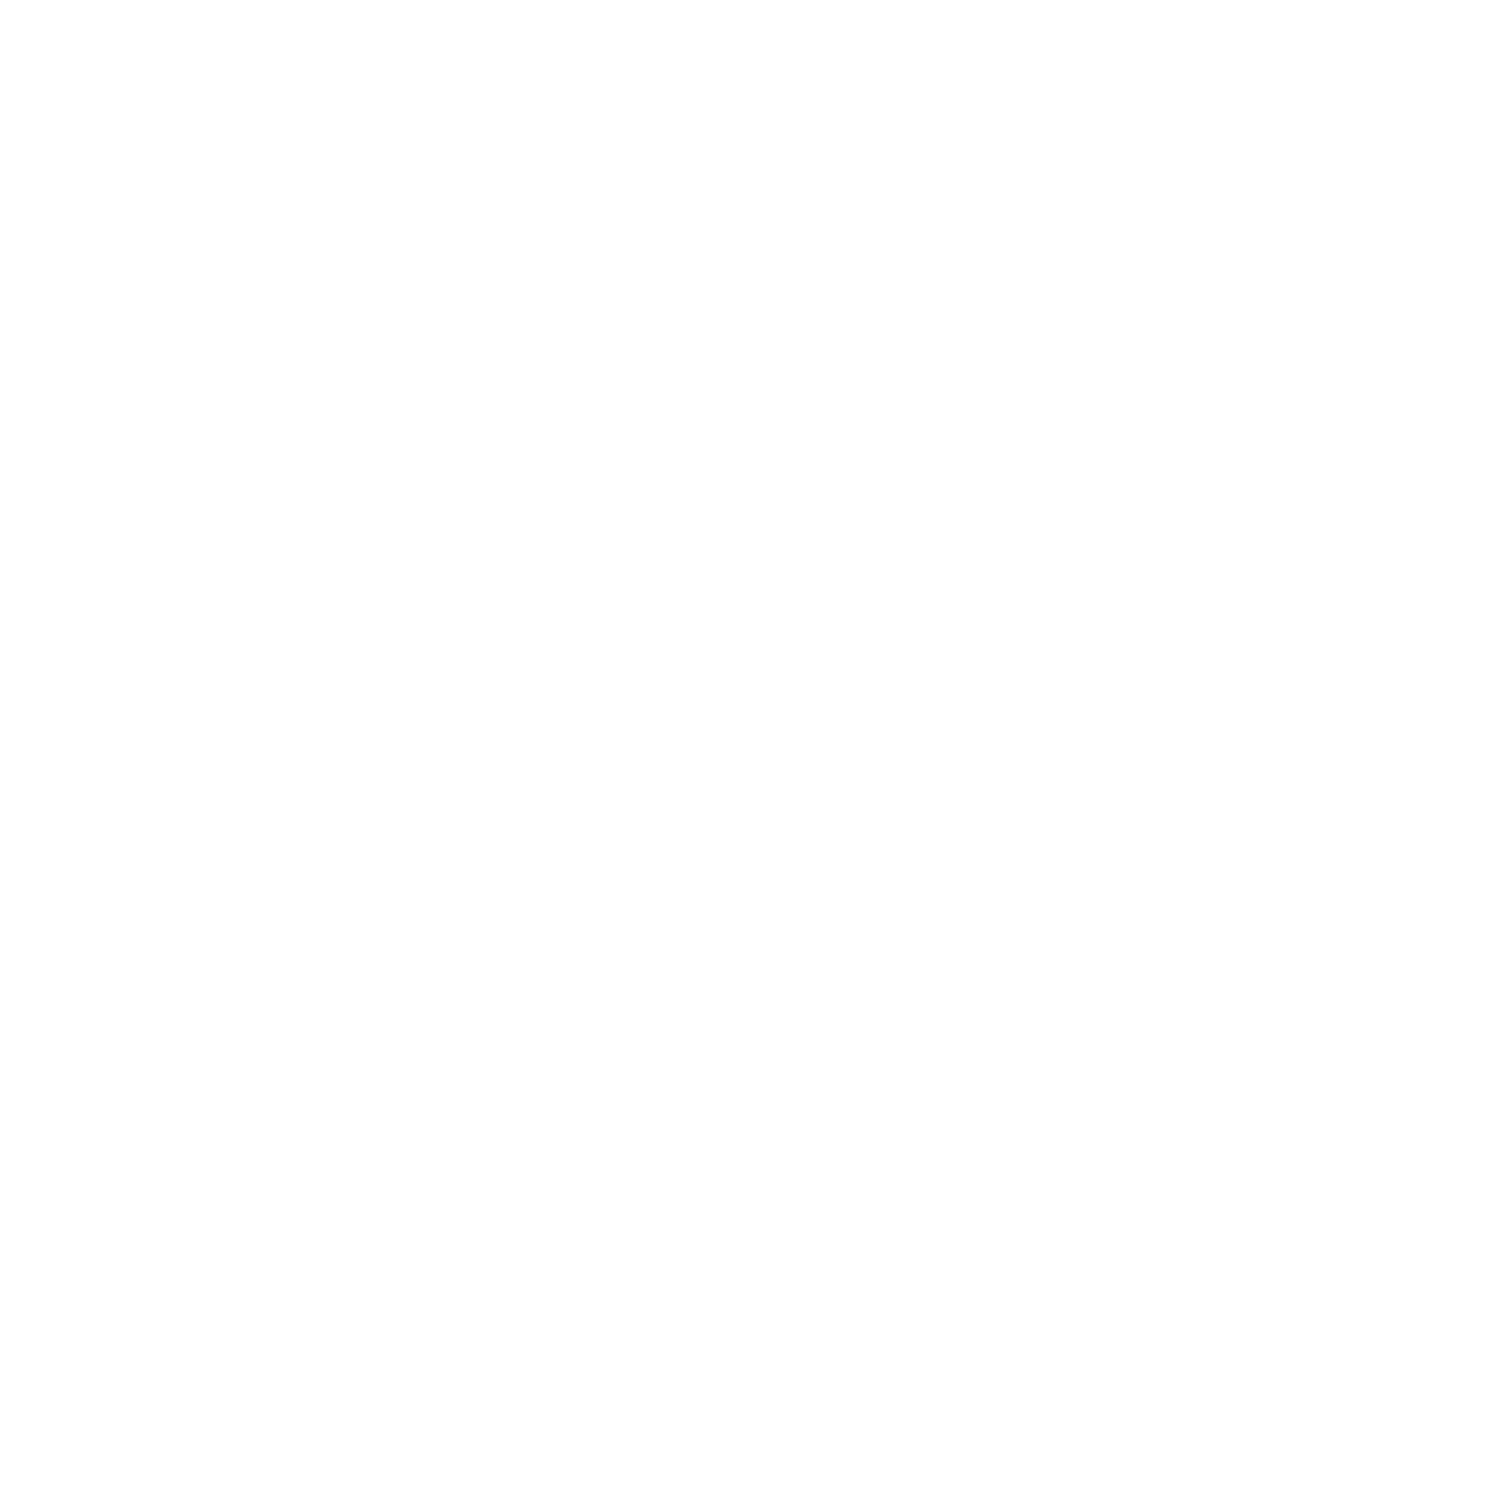 1:8 Community Church